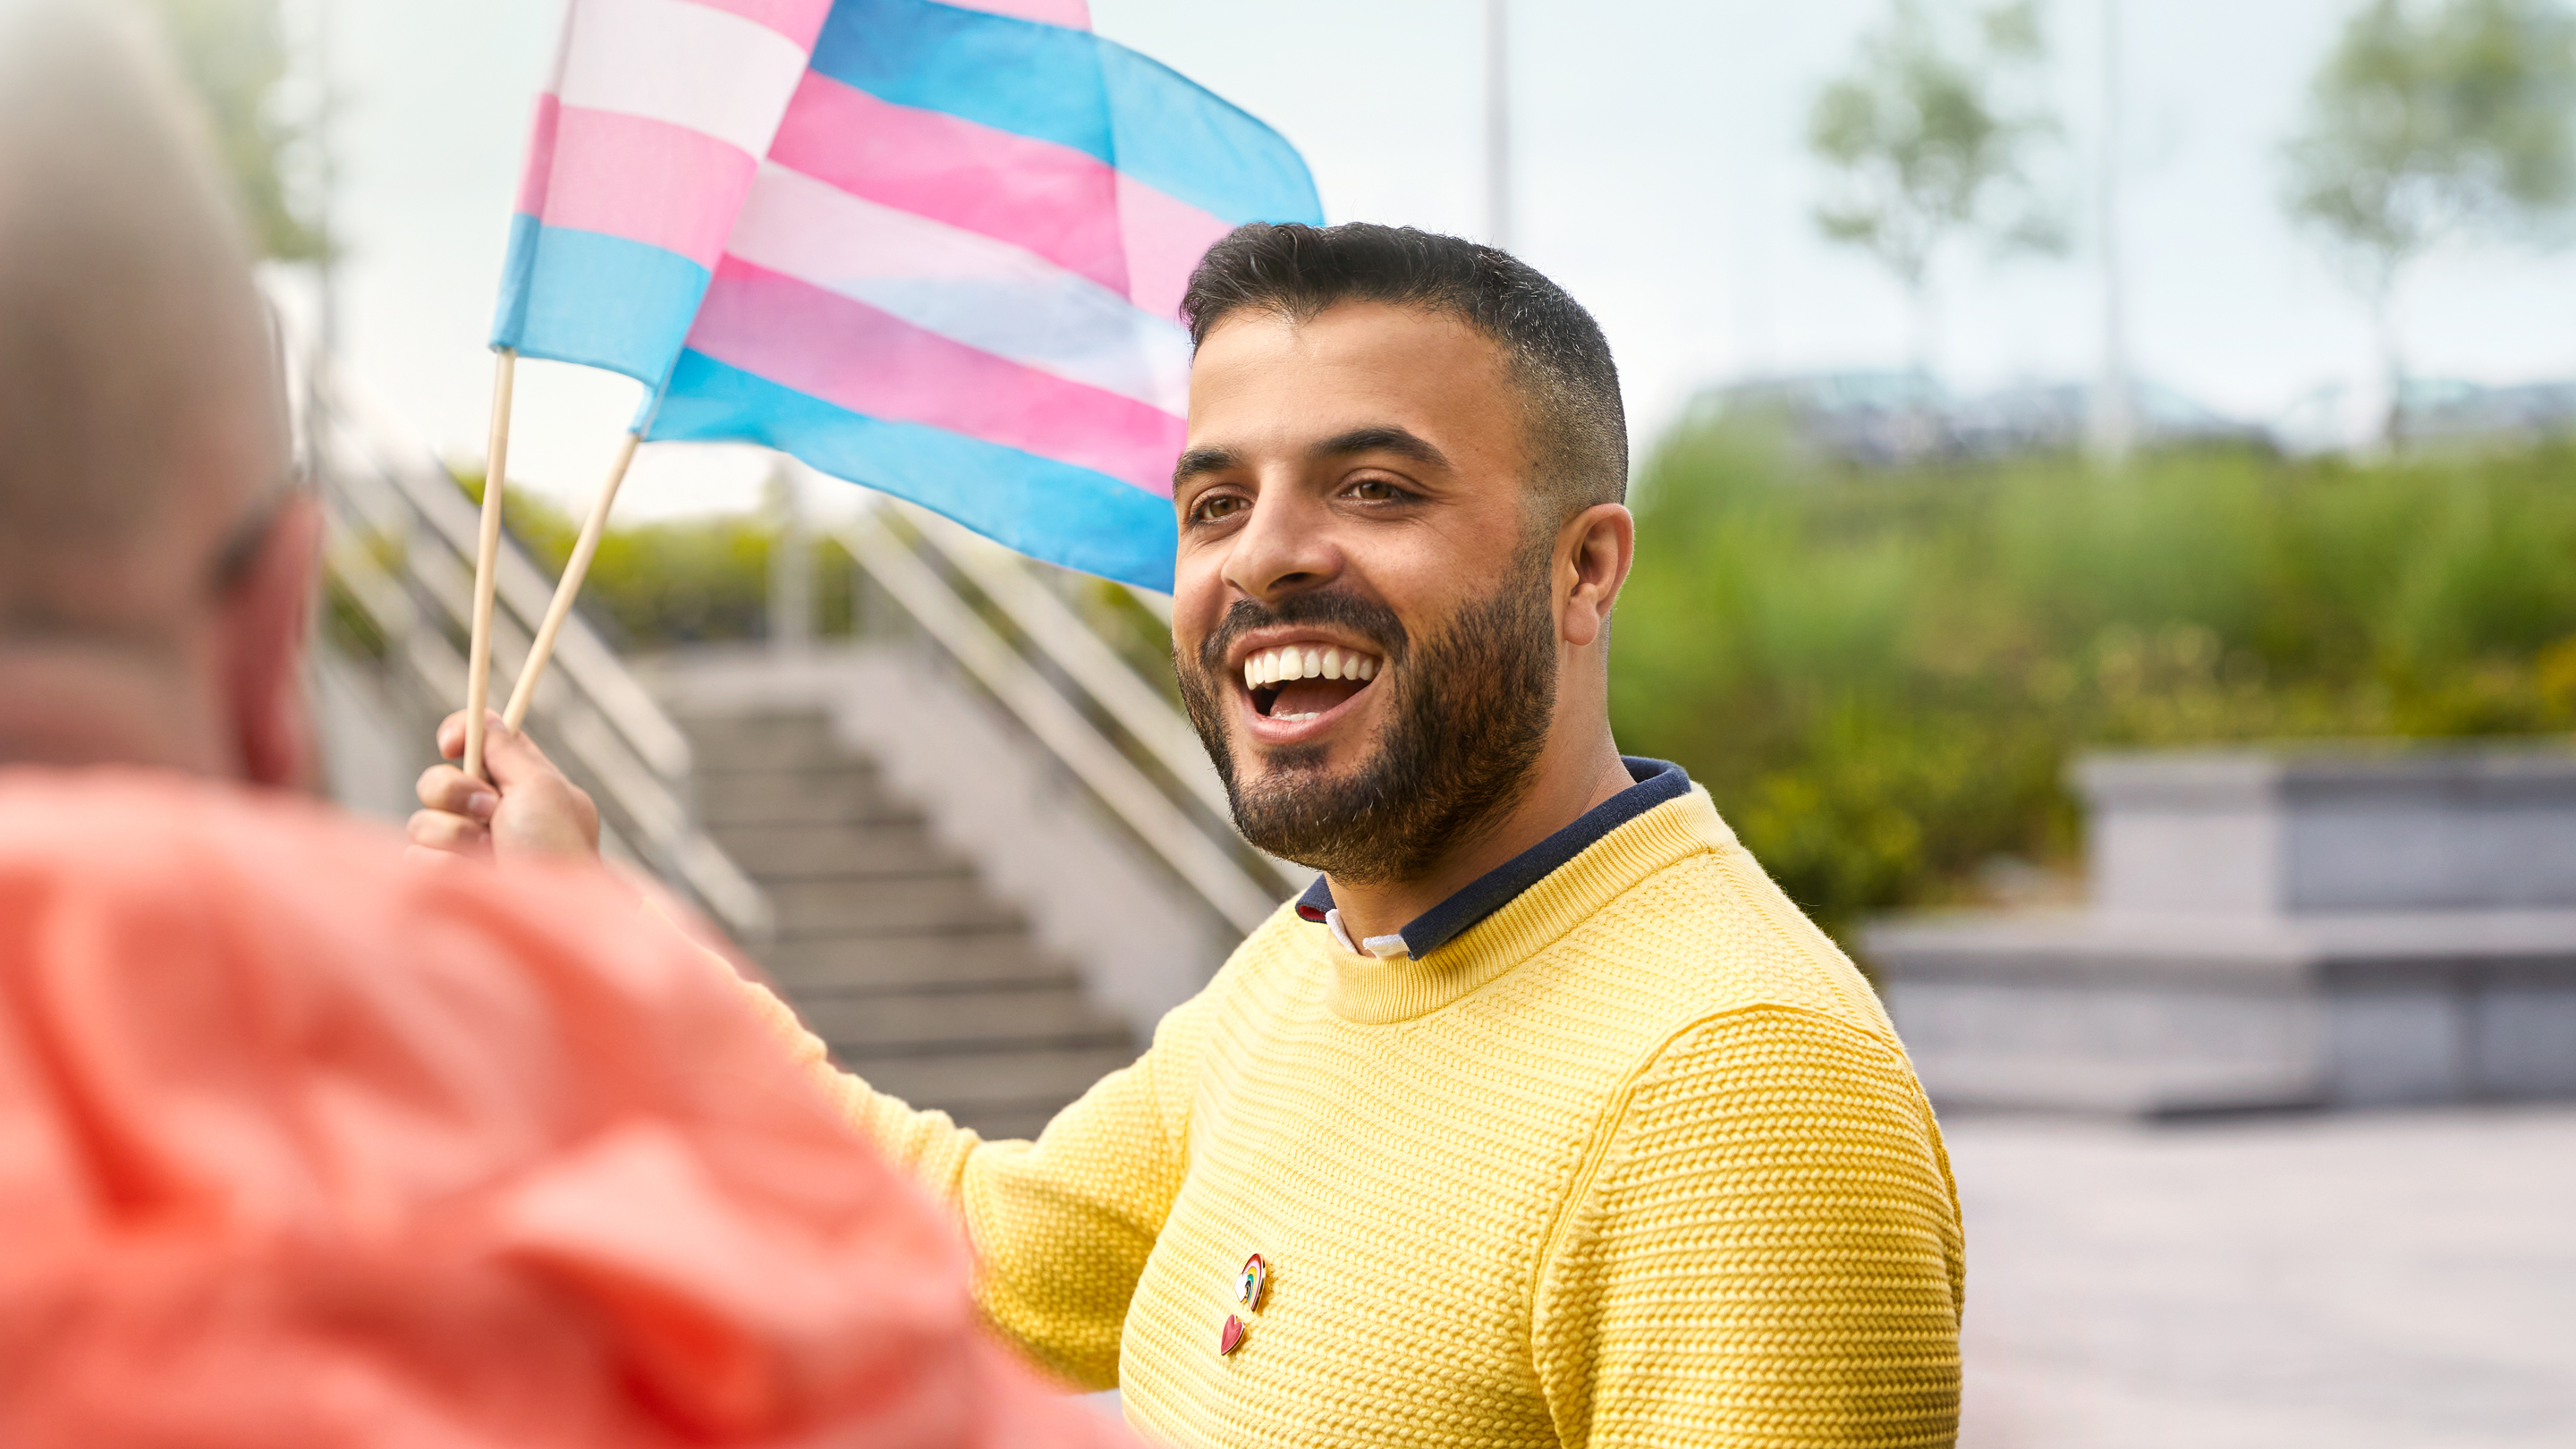 Un employé d’Apple Cork brandit un drapeau de la communauté transgenre.